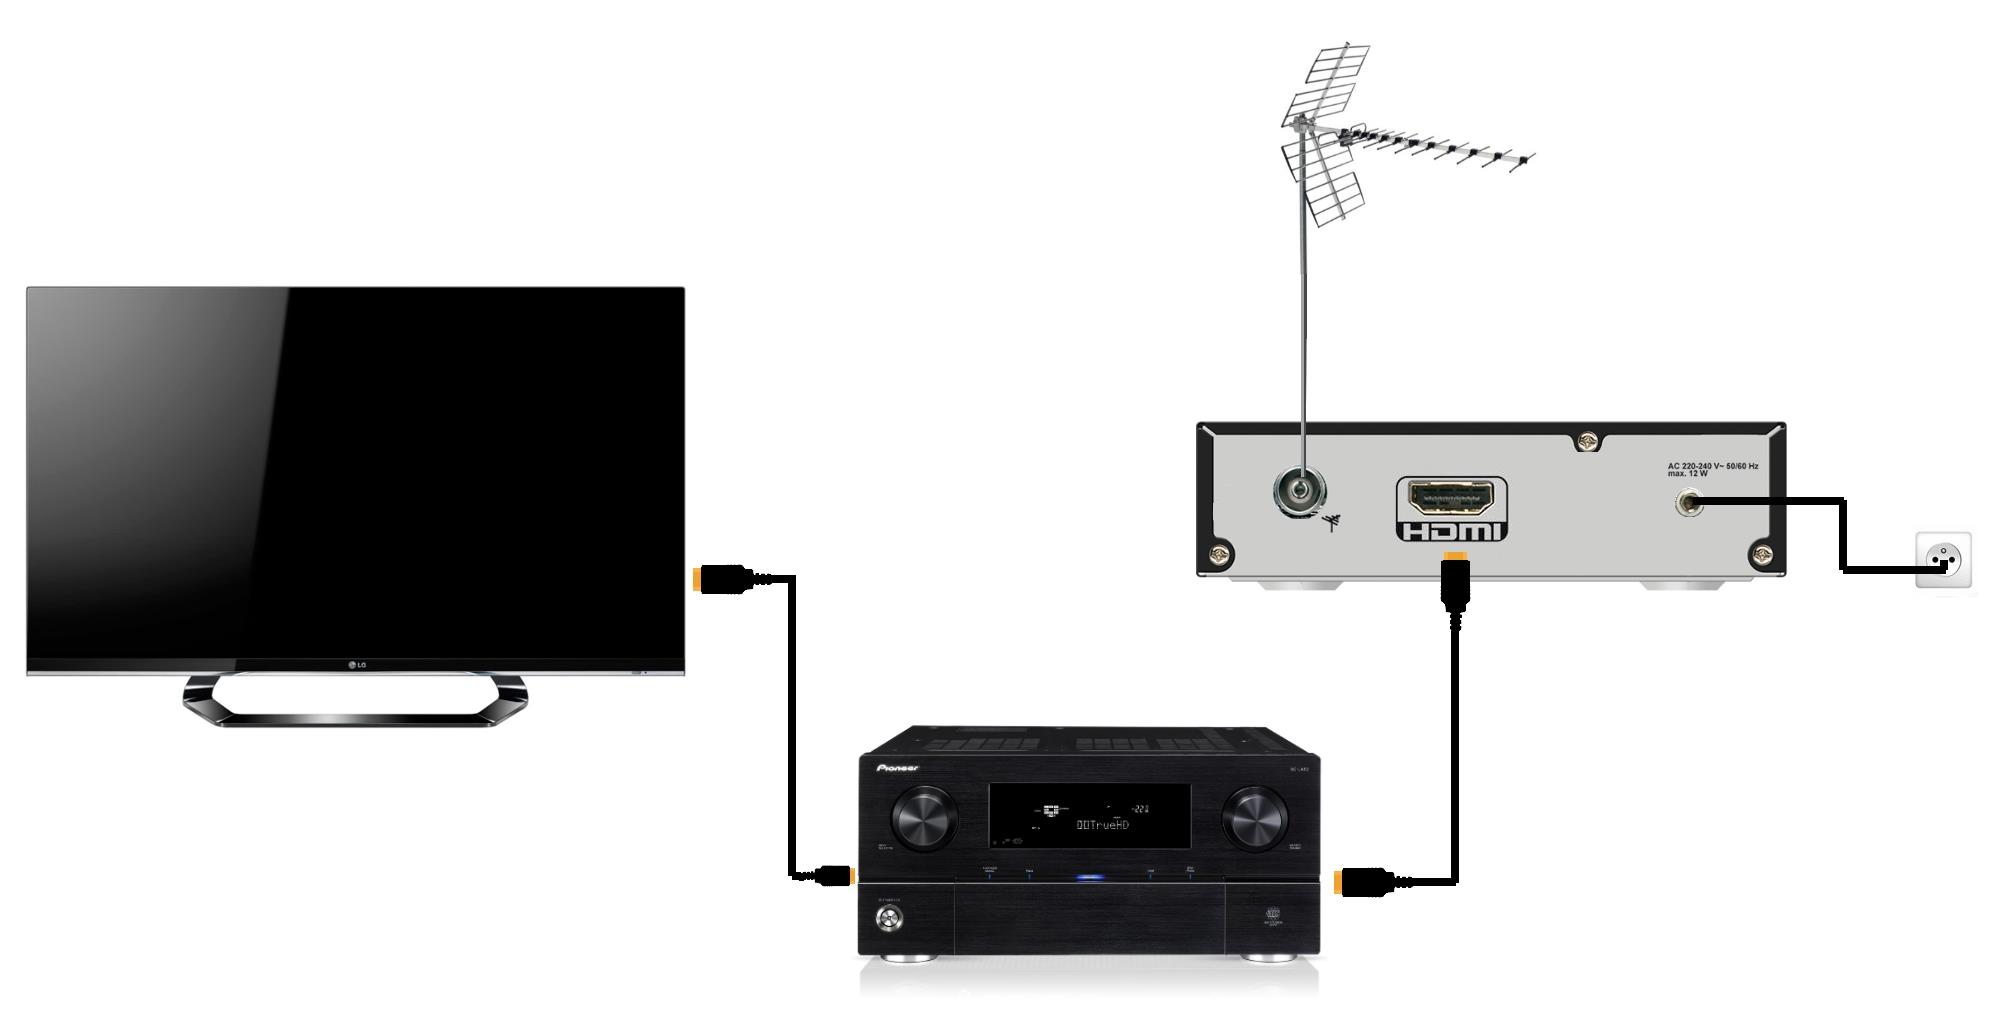 Décodeur TNT DVB-T2 prise en charge USB Wi-Fi/multimédia/PVR 【télécommande universelle 2 en 1】 tnt décodeur,decodeur tnt hd pour tv 1080P / H.265 / 10 bits réception de toutes les chaînes gratuites 